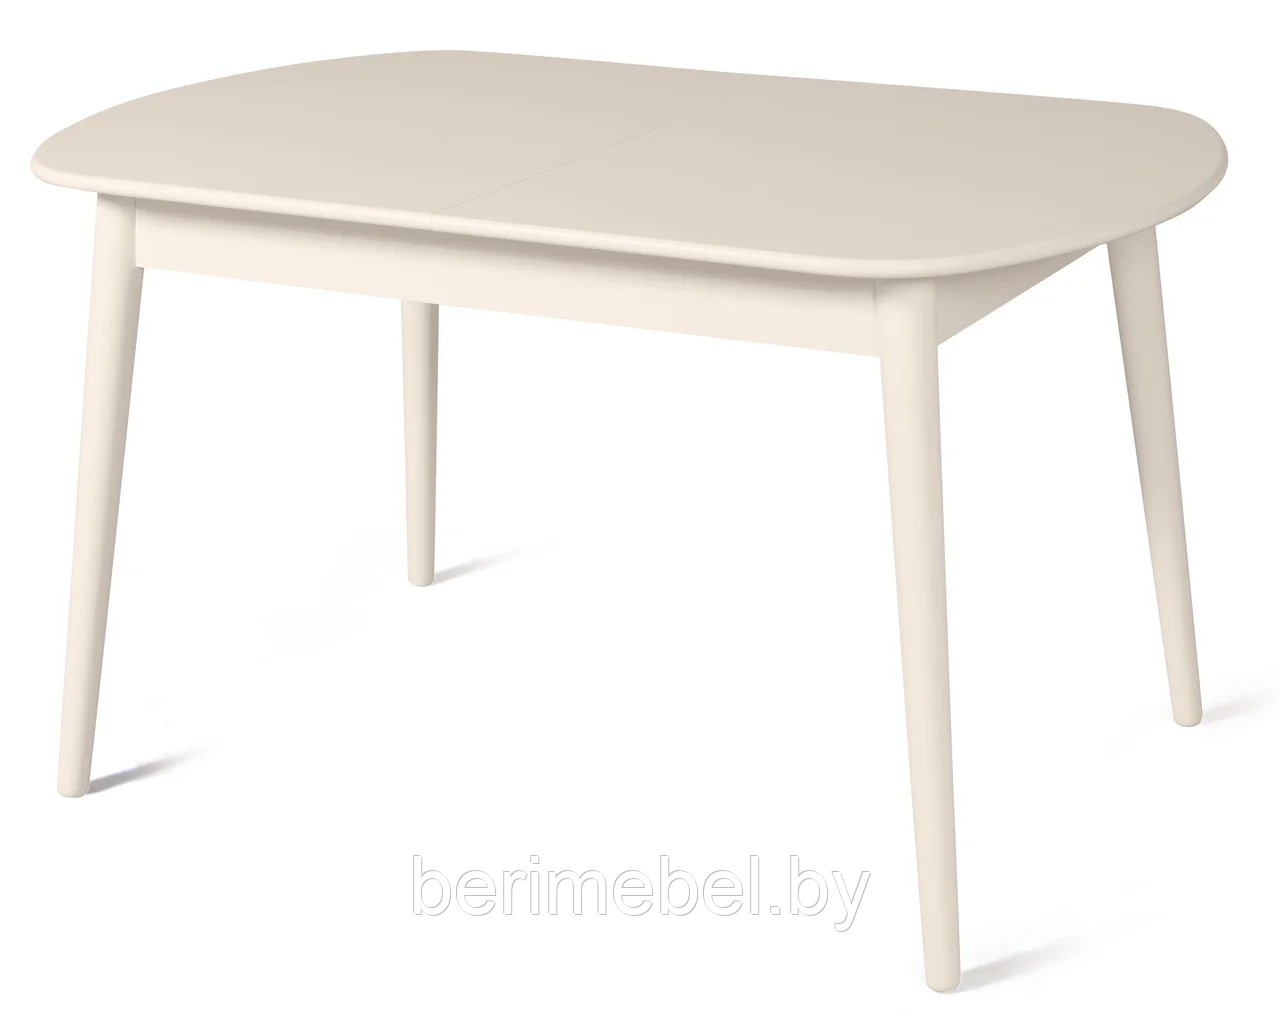 Стол обеденный "Эней" раздвижной Мебель-Класс Cream White